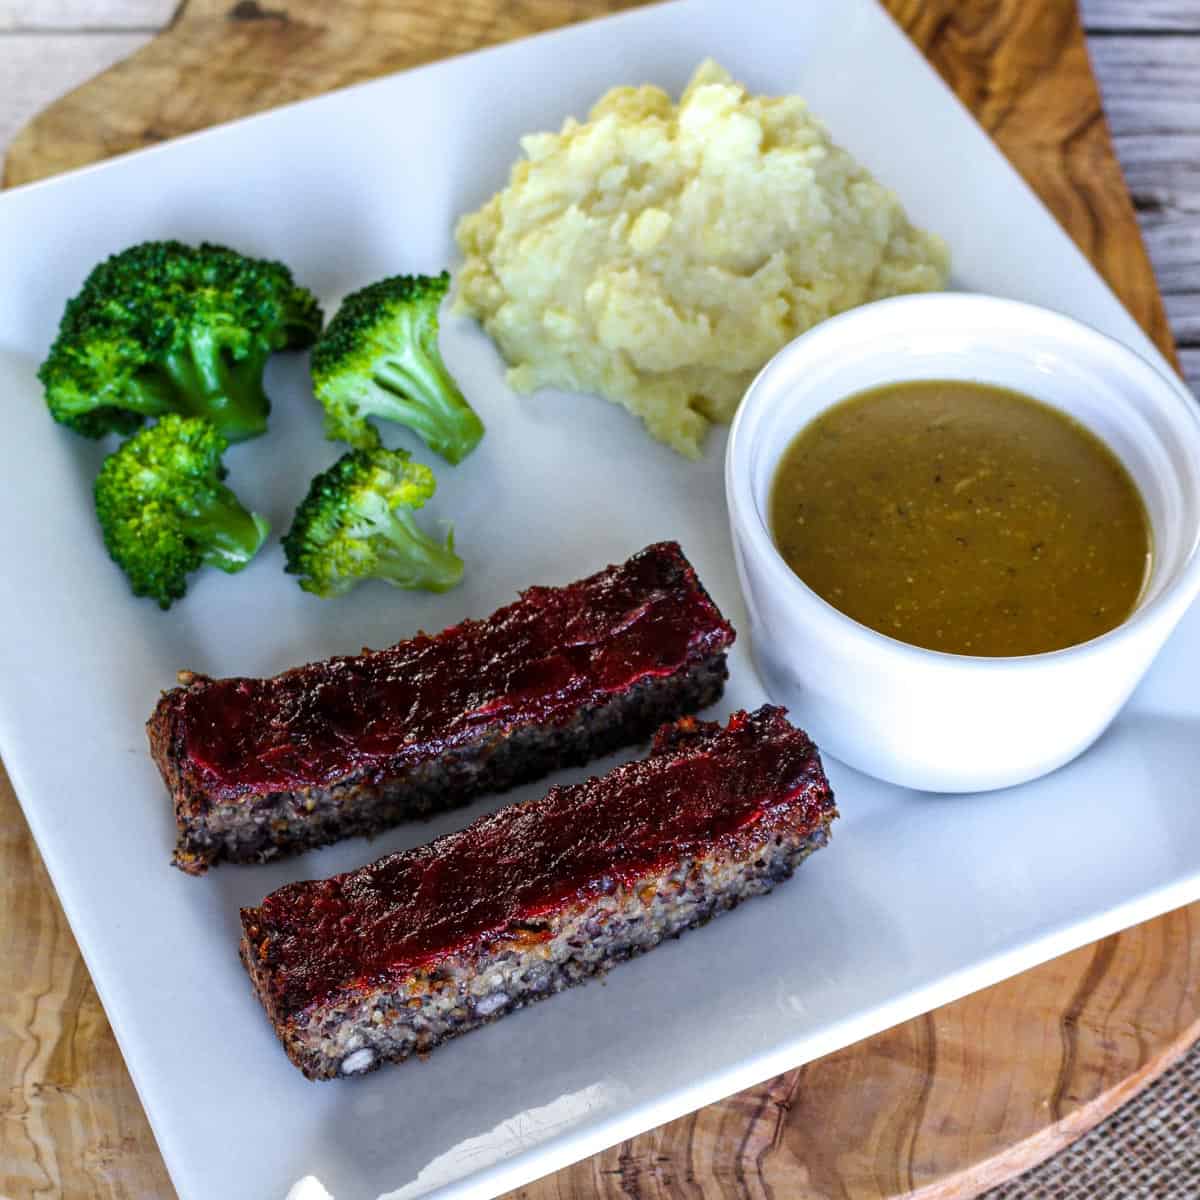 Gravy, vegan meatloaf, broccoli & mashed potatoes.